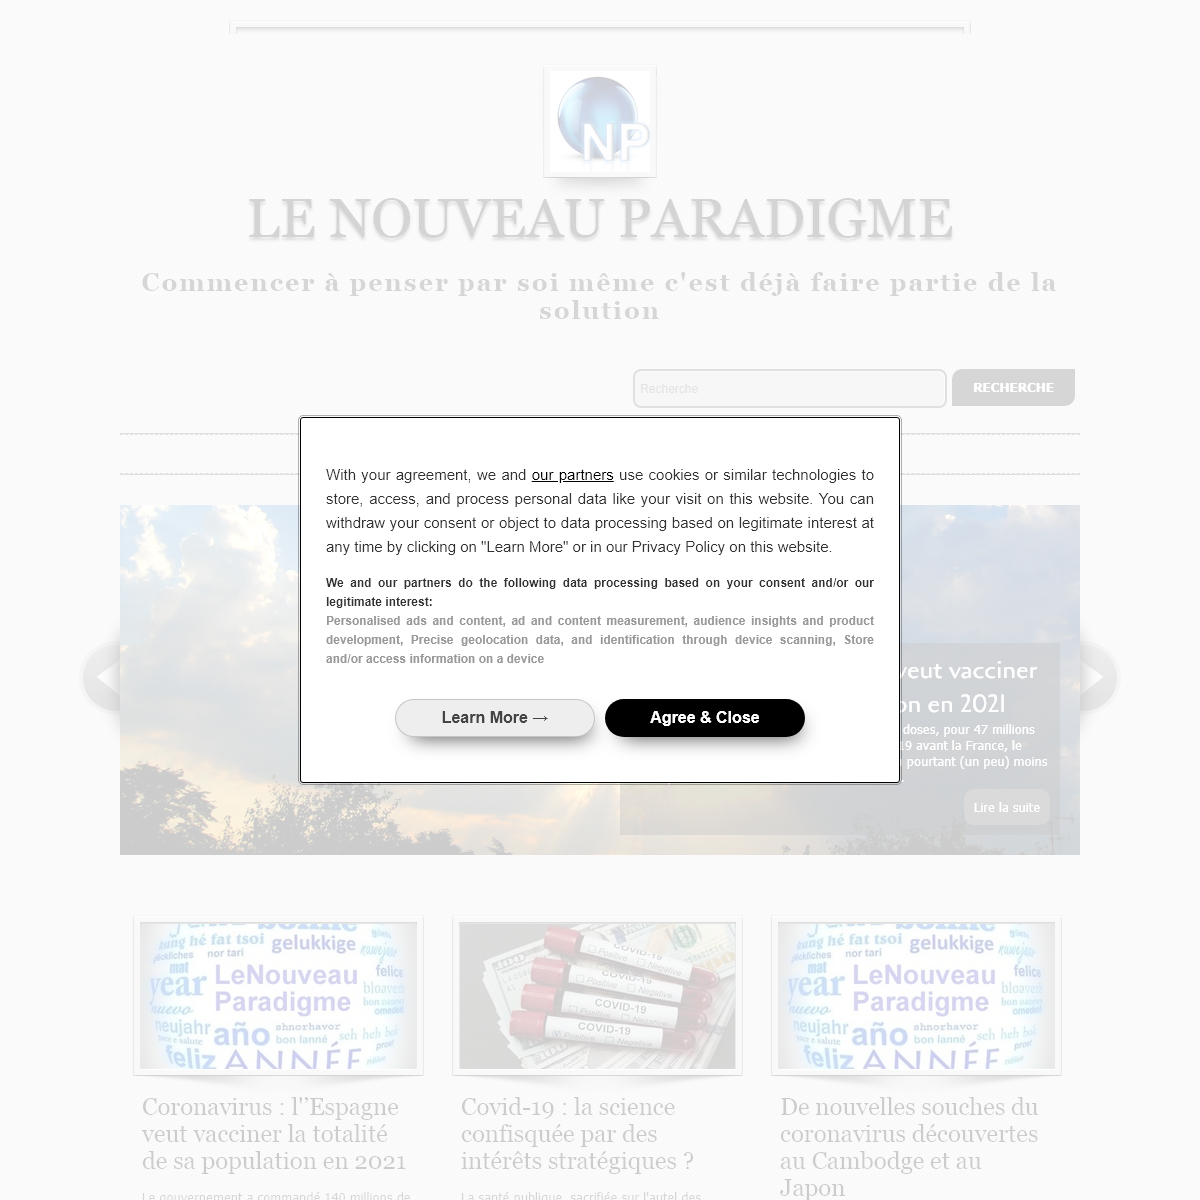 A complete backup of 2012un-nouveau-paradigme.com